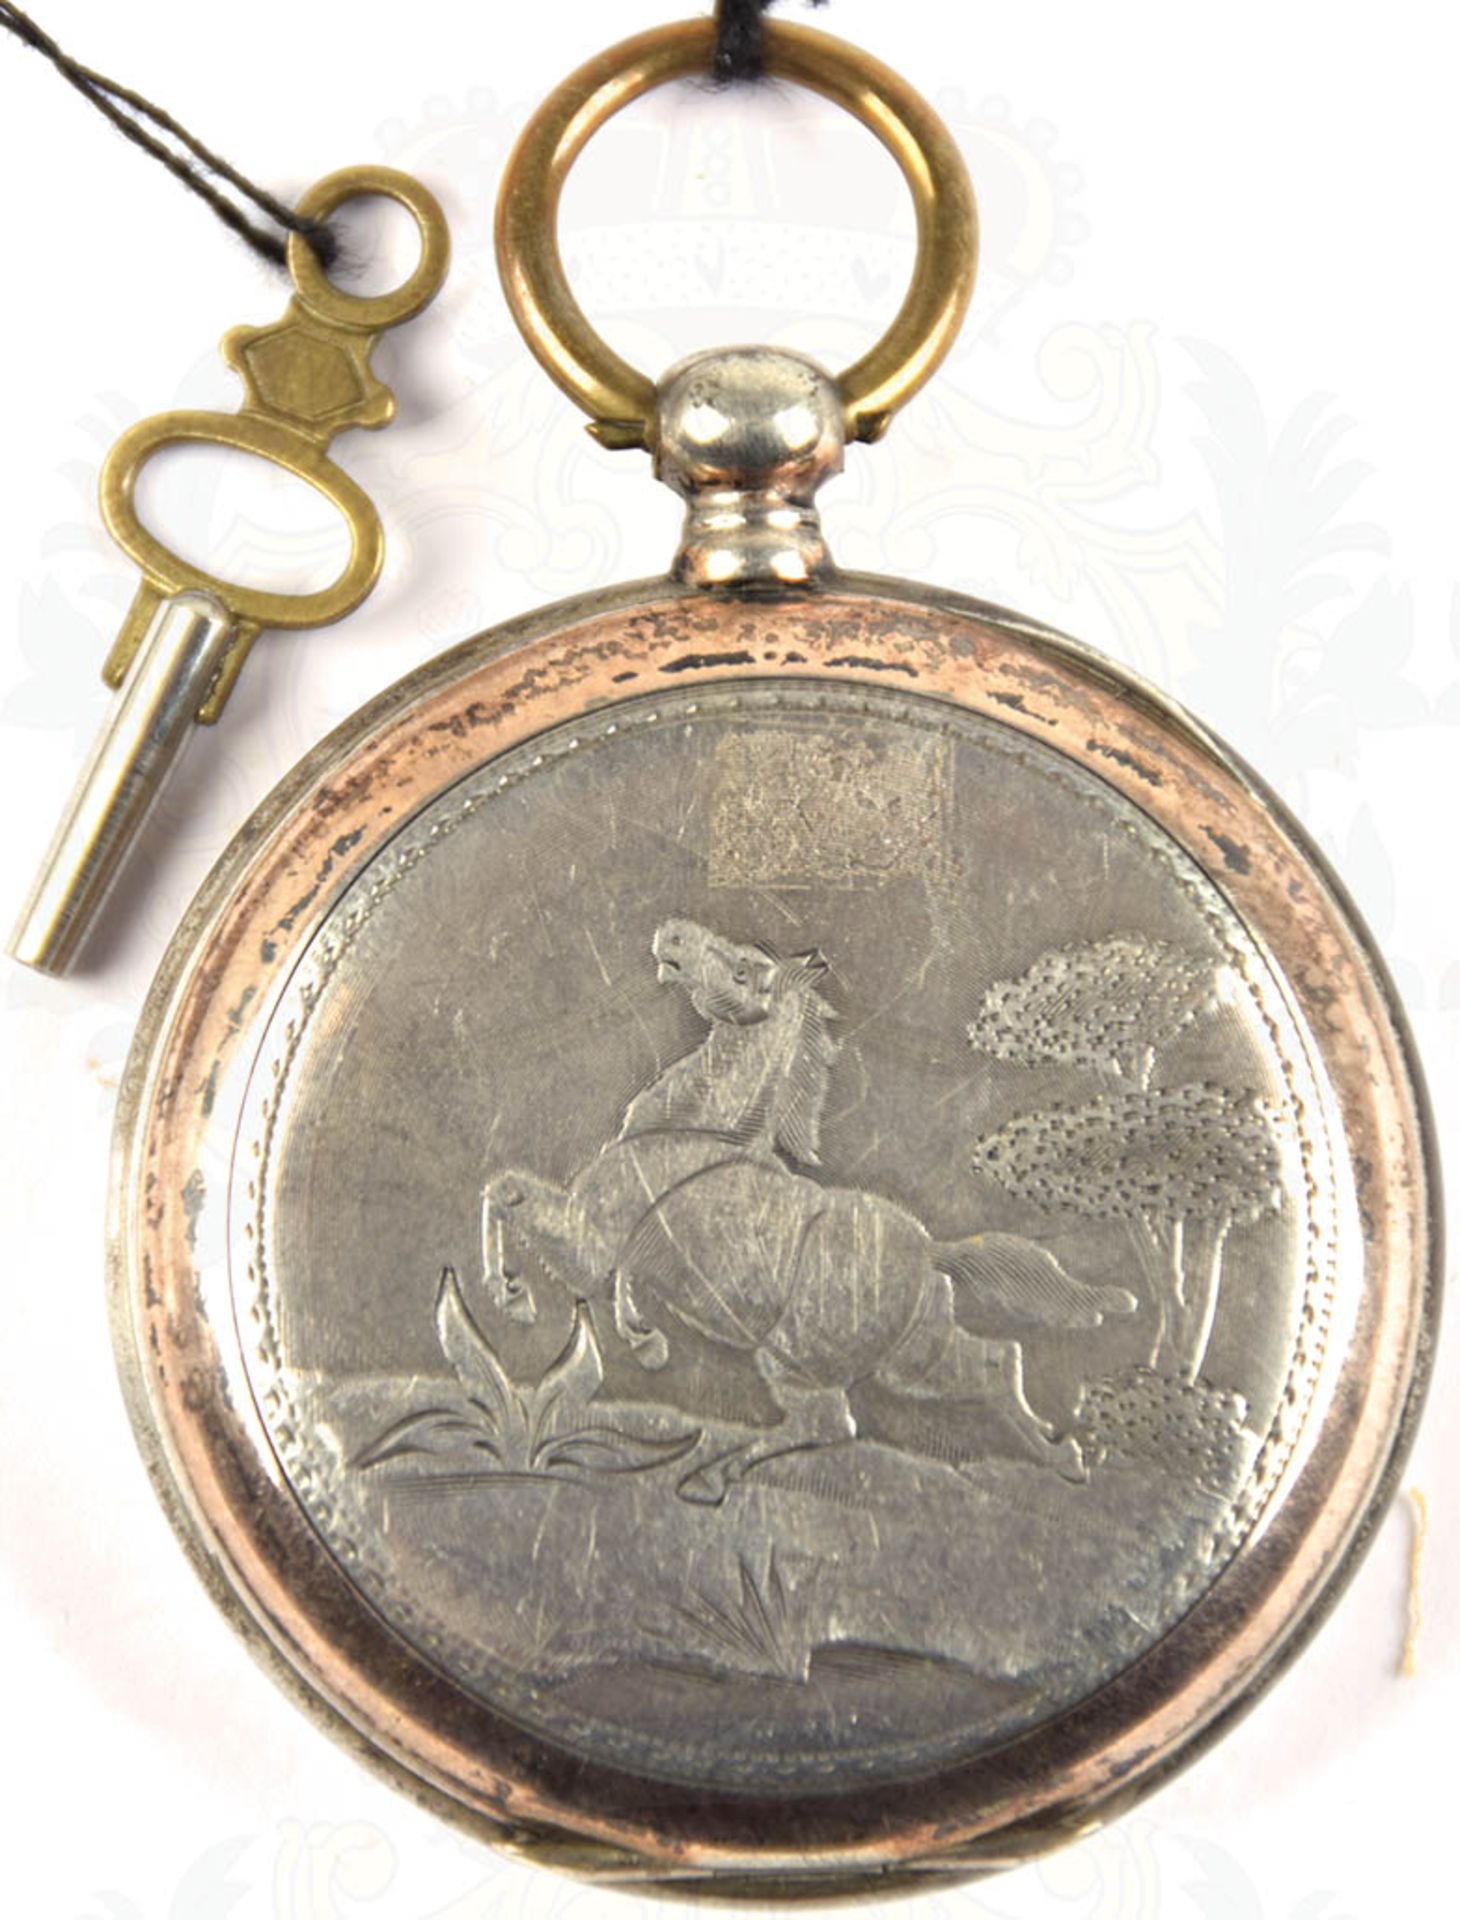 HERREN-TASCHENUHR, um 1890, punziert "800", 15 Rubis, Tragering, Schlüsselaufzug (orig. Schlüssel - Bild 2 aus 2